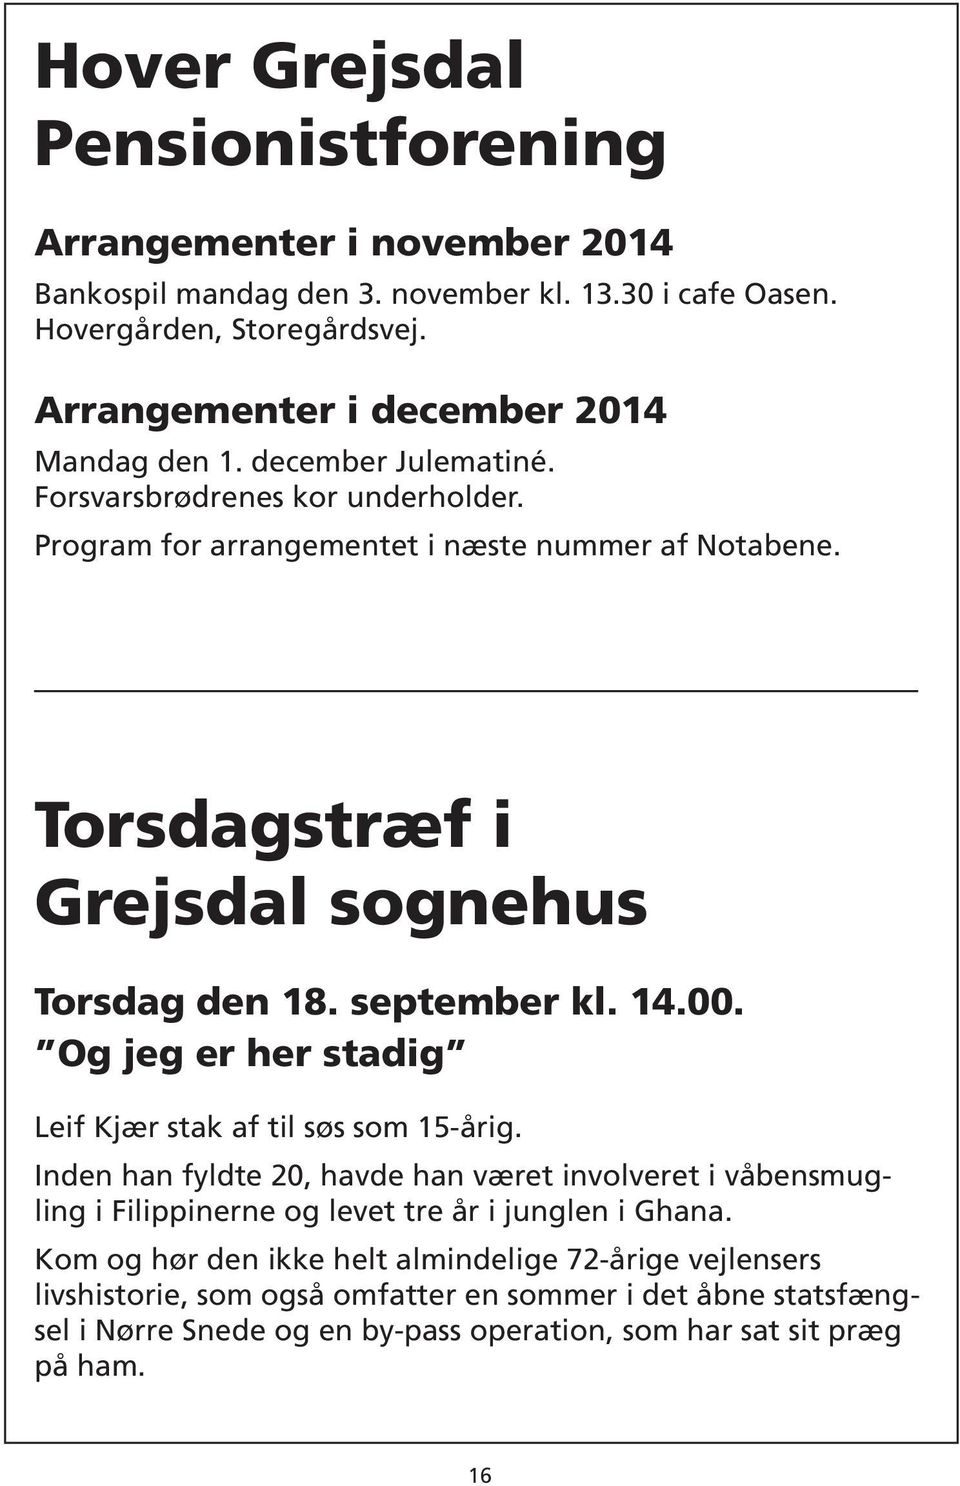 Torsdagstræf i Grejsdal sognehus Torsdag den 18. september kl. 14.00. Og jeg er her stadig Leif Kjær stak af til søs som 15-årig.